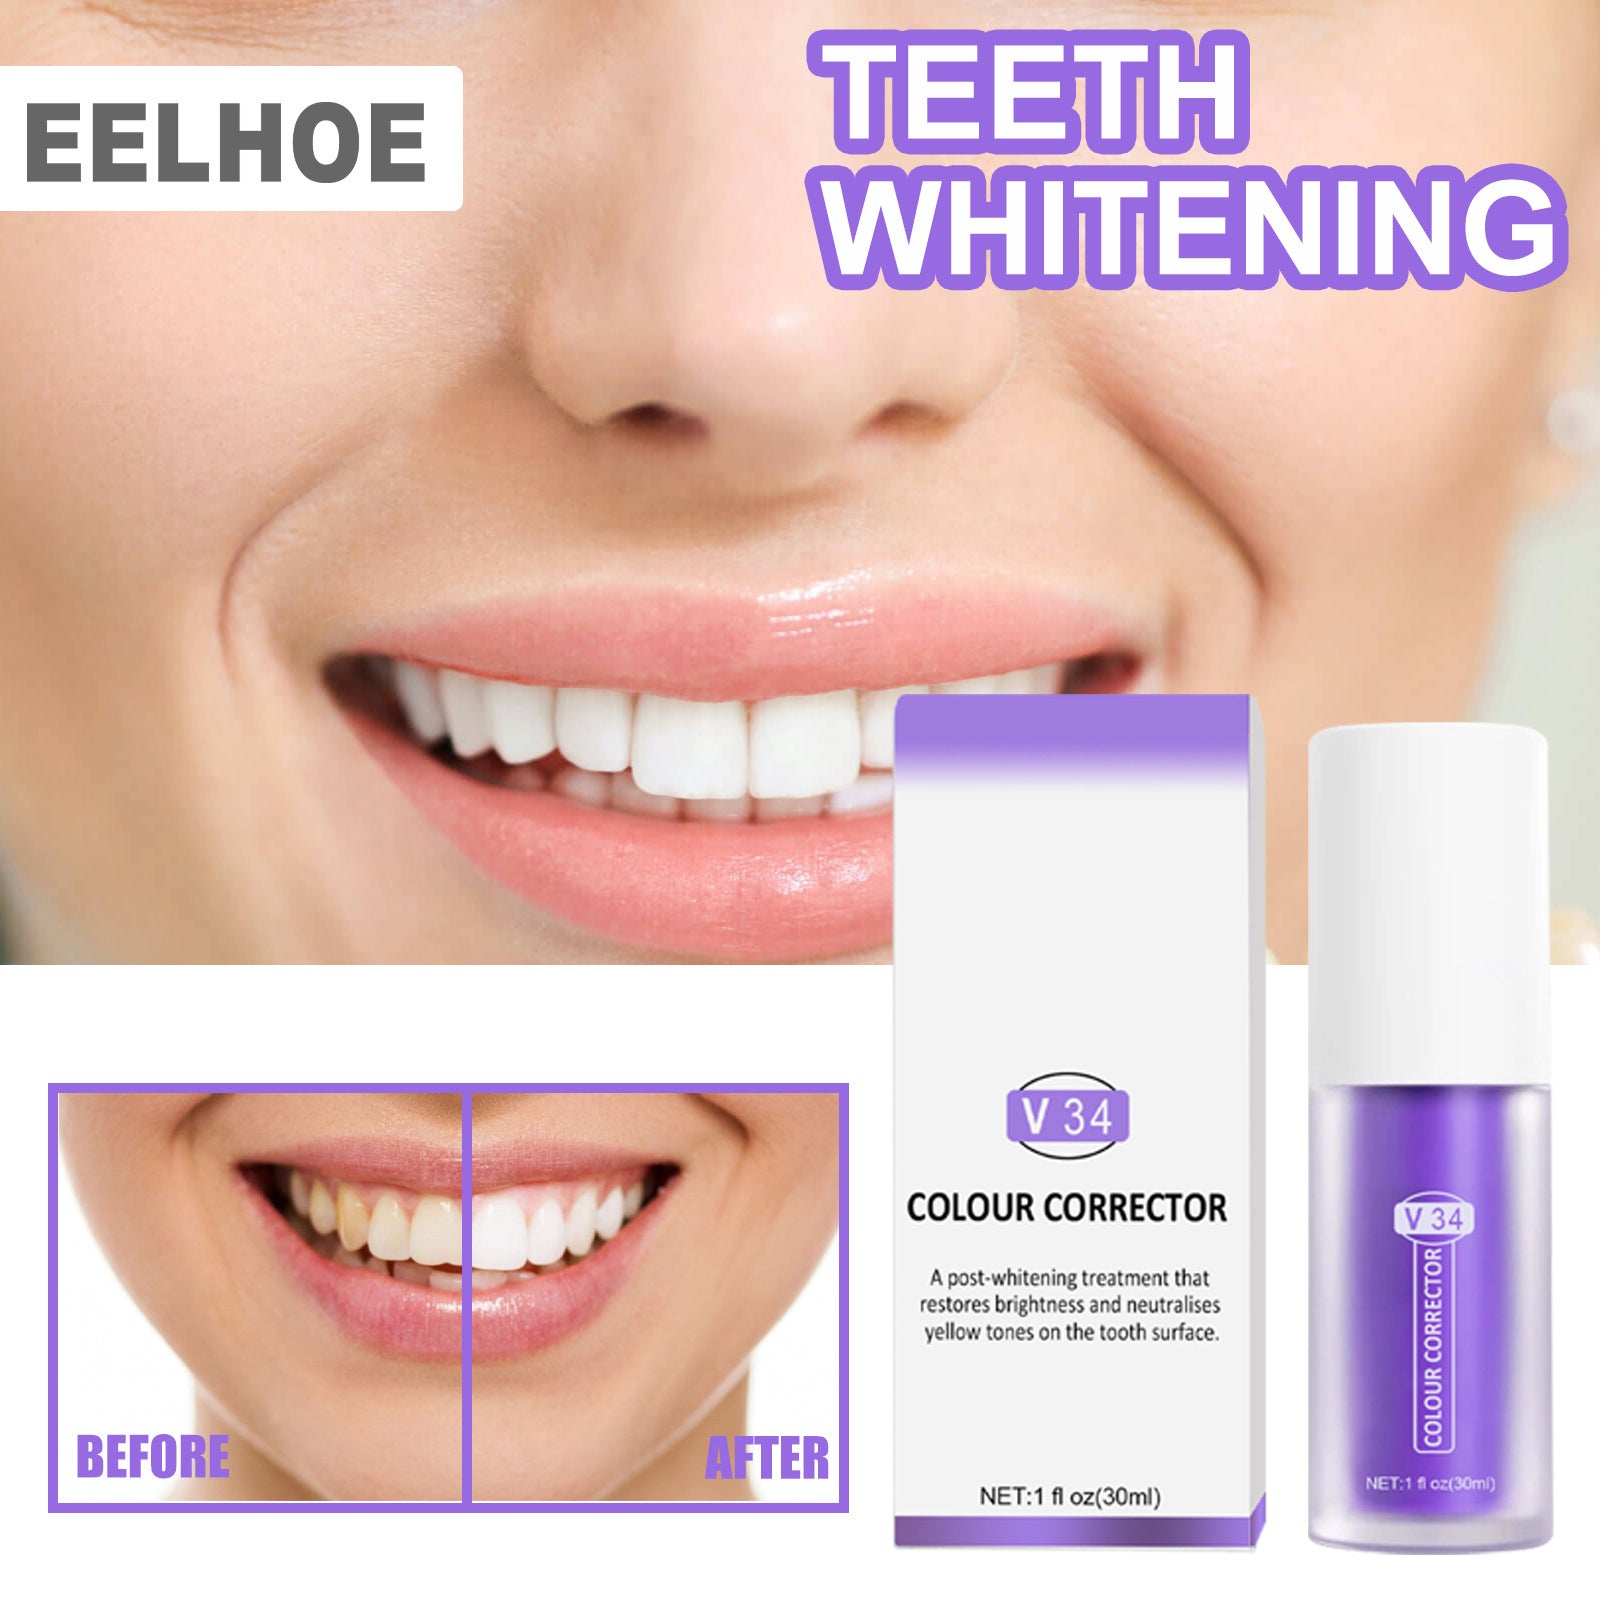 V34 Teeth Whitening Toothpaste